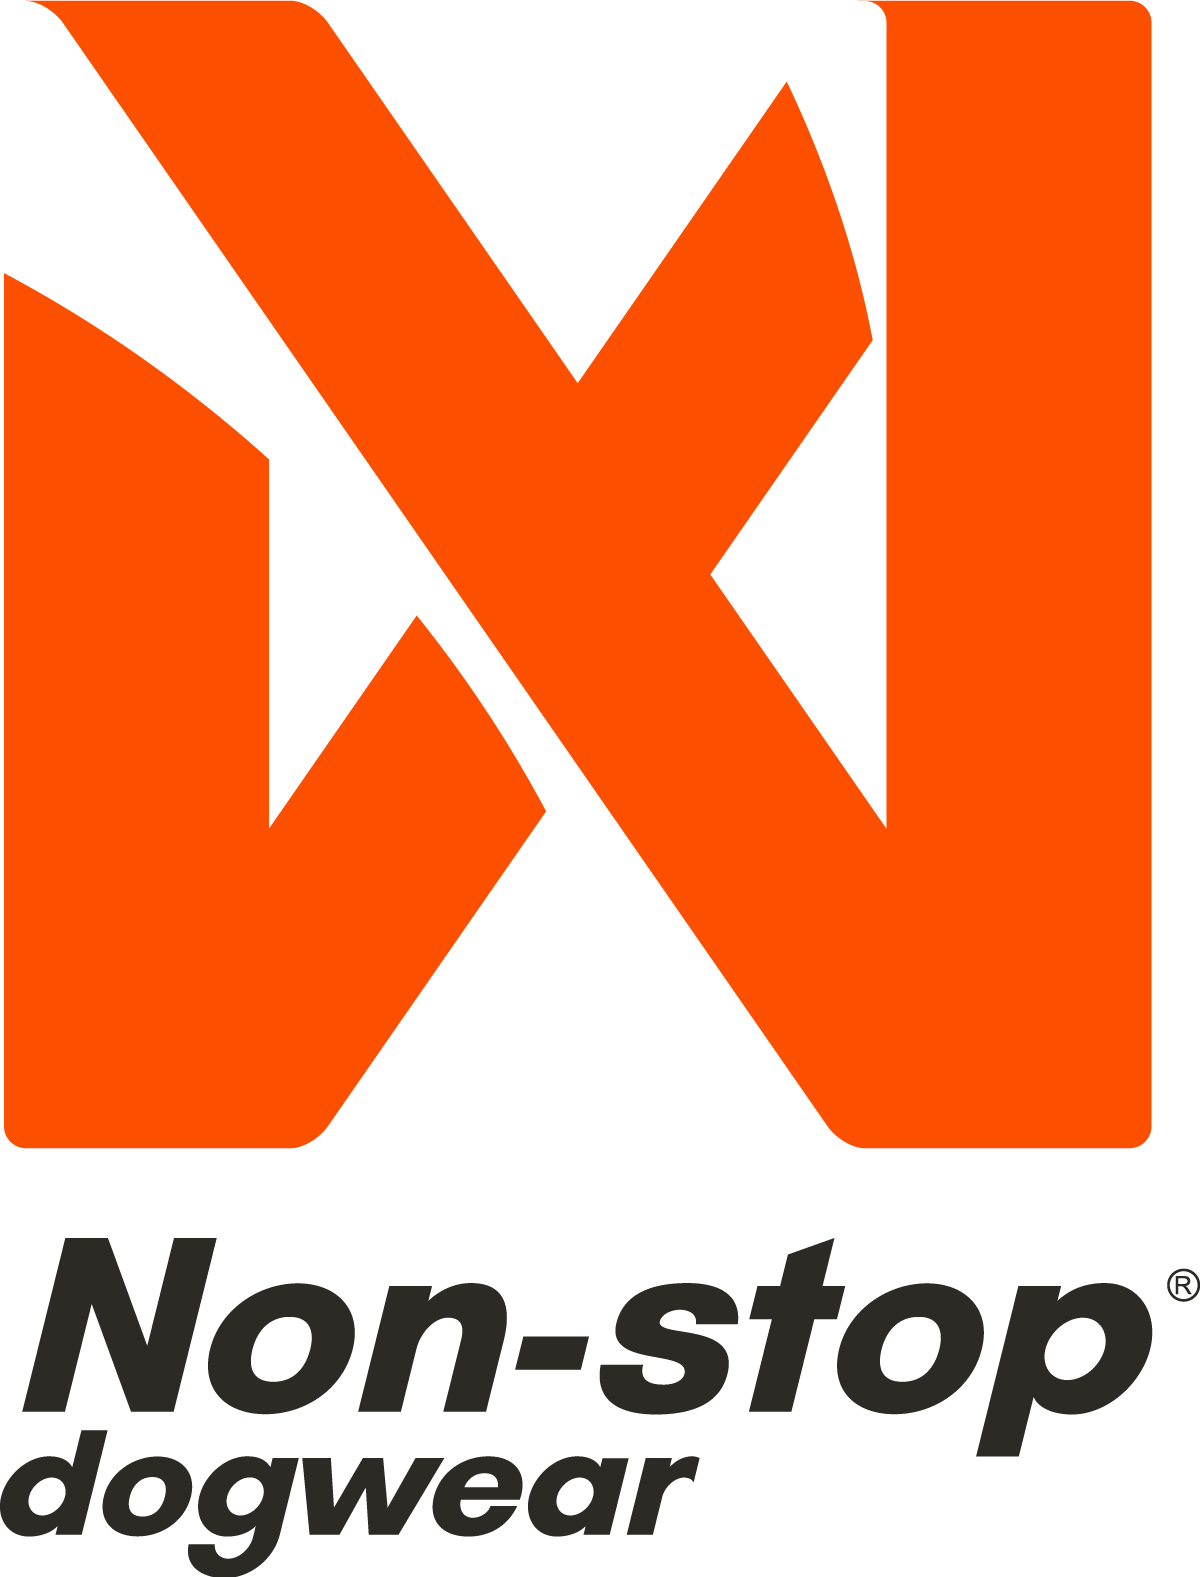 Non-stop dogwearin logo